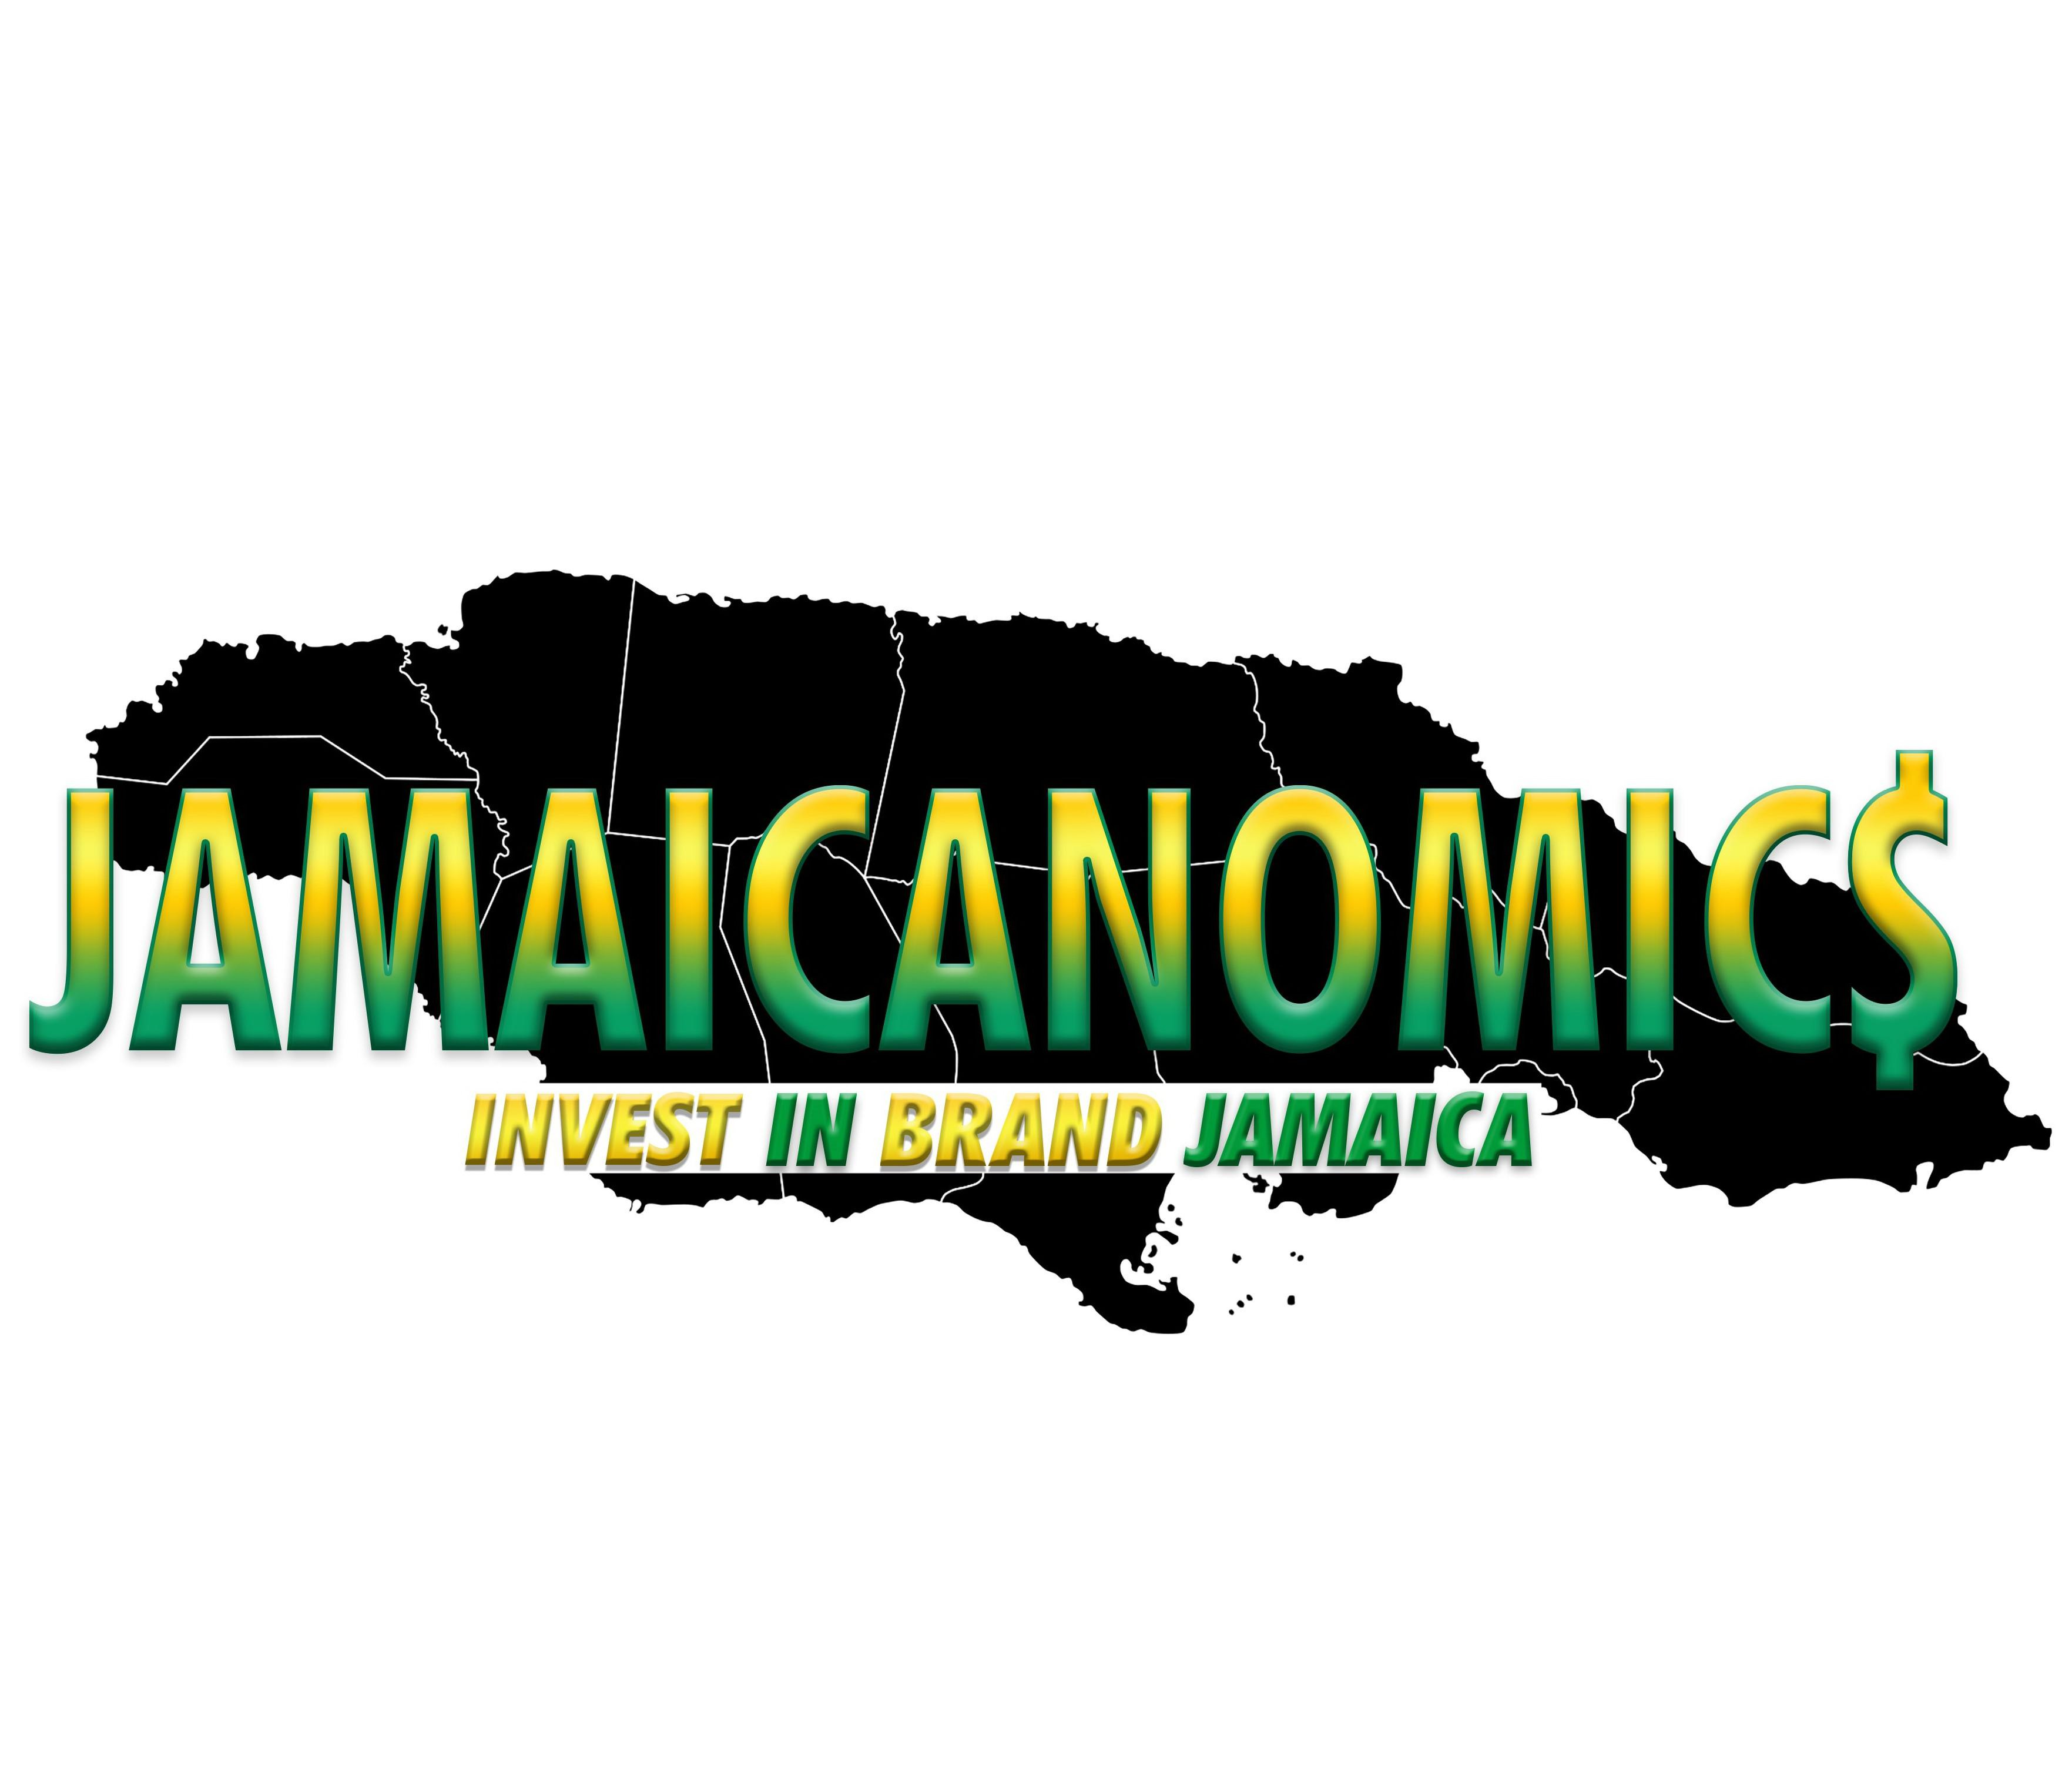  JAMAICANOMIC$ INVEST IN BRAND JAMAICA